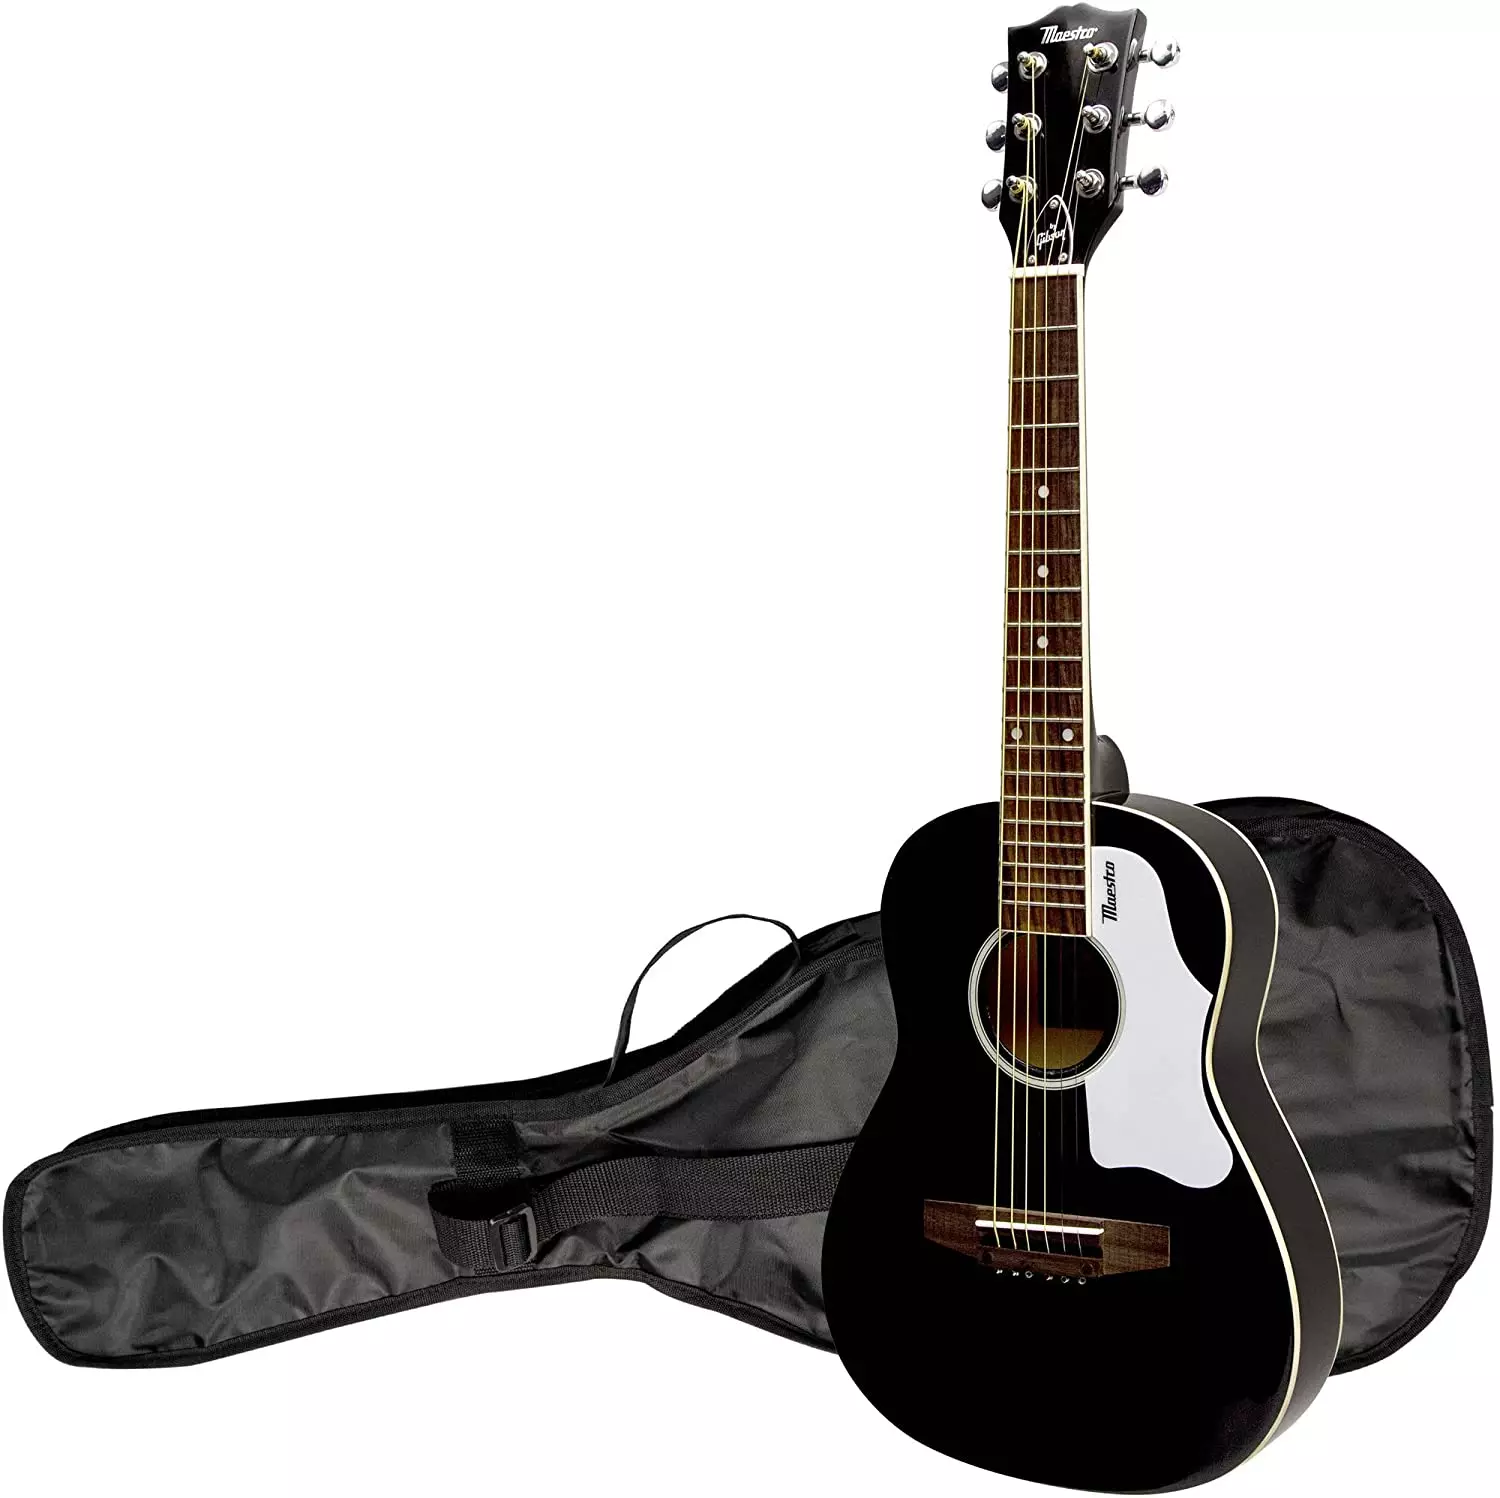 블랙 기타 : 클래식 6 문자열 및 기타 기타, 흰색 및 레드 블랙 컬러, 매트 및 광택 26252_8